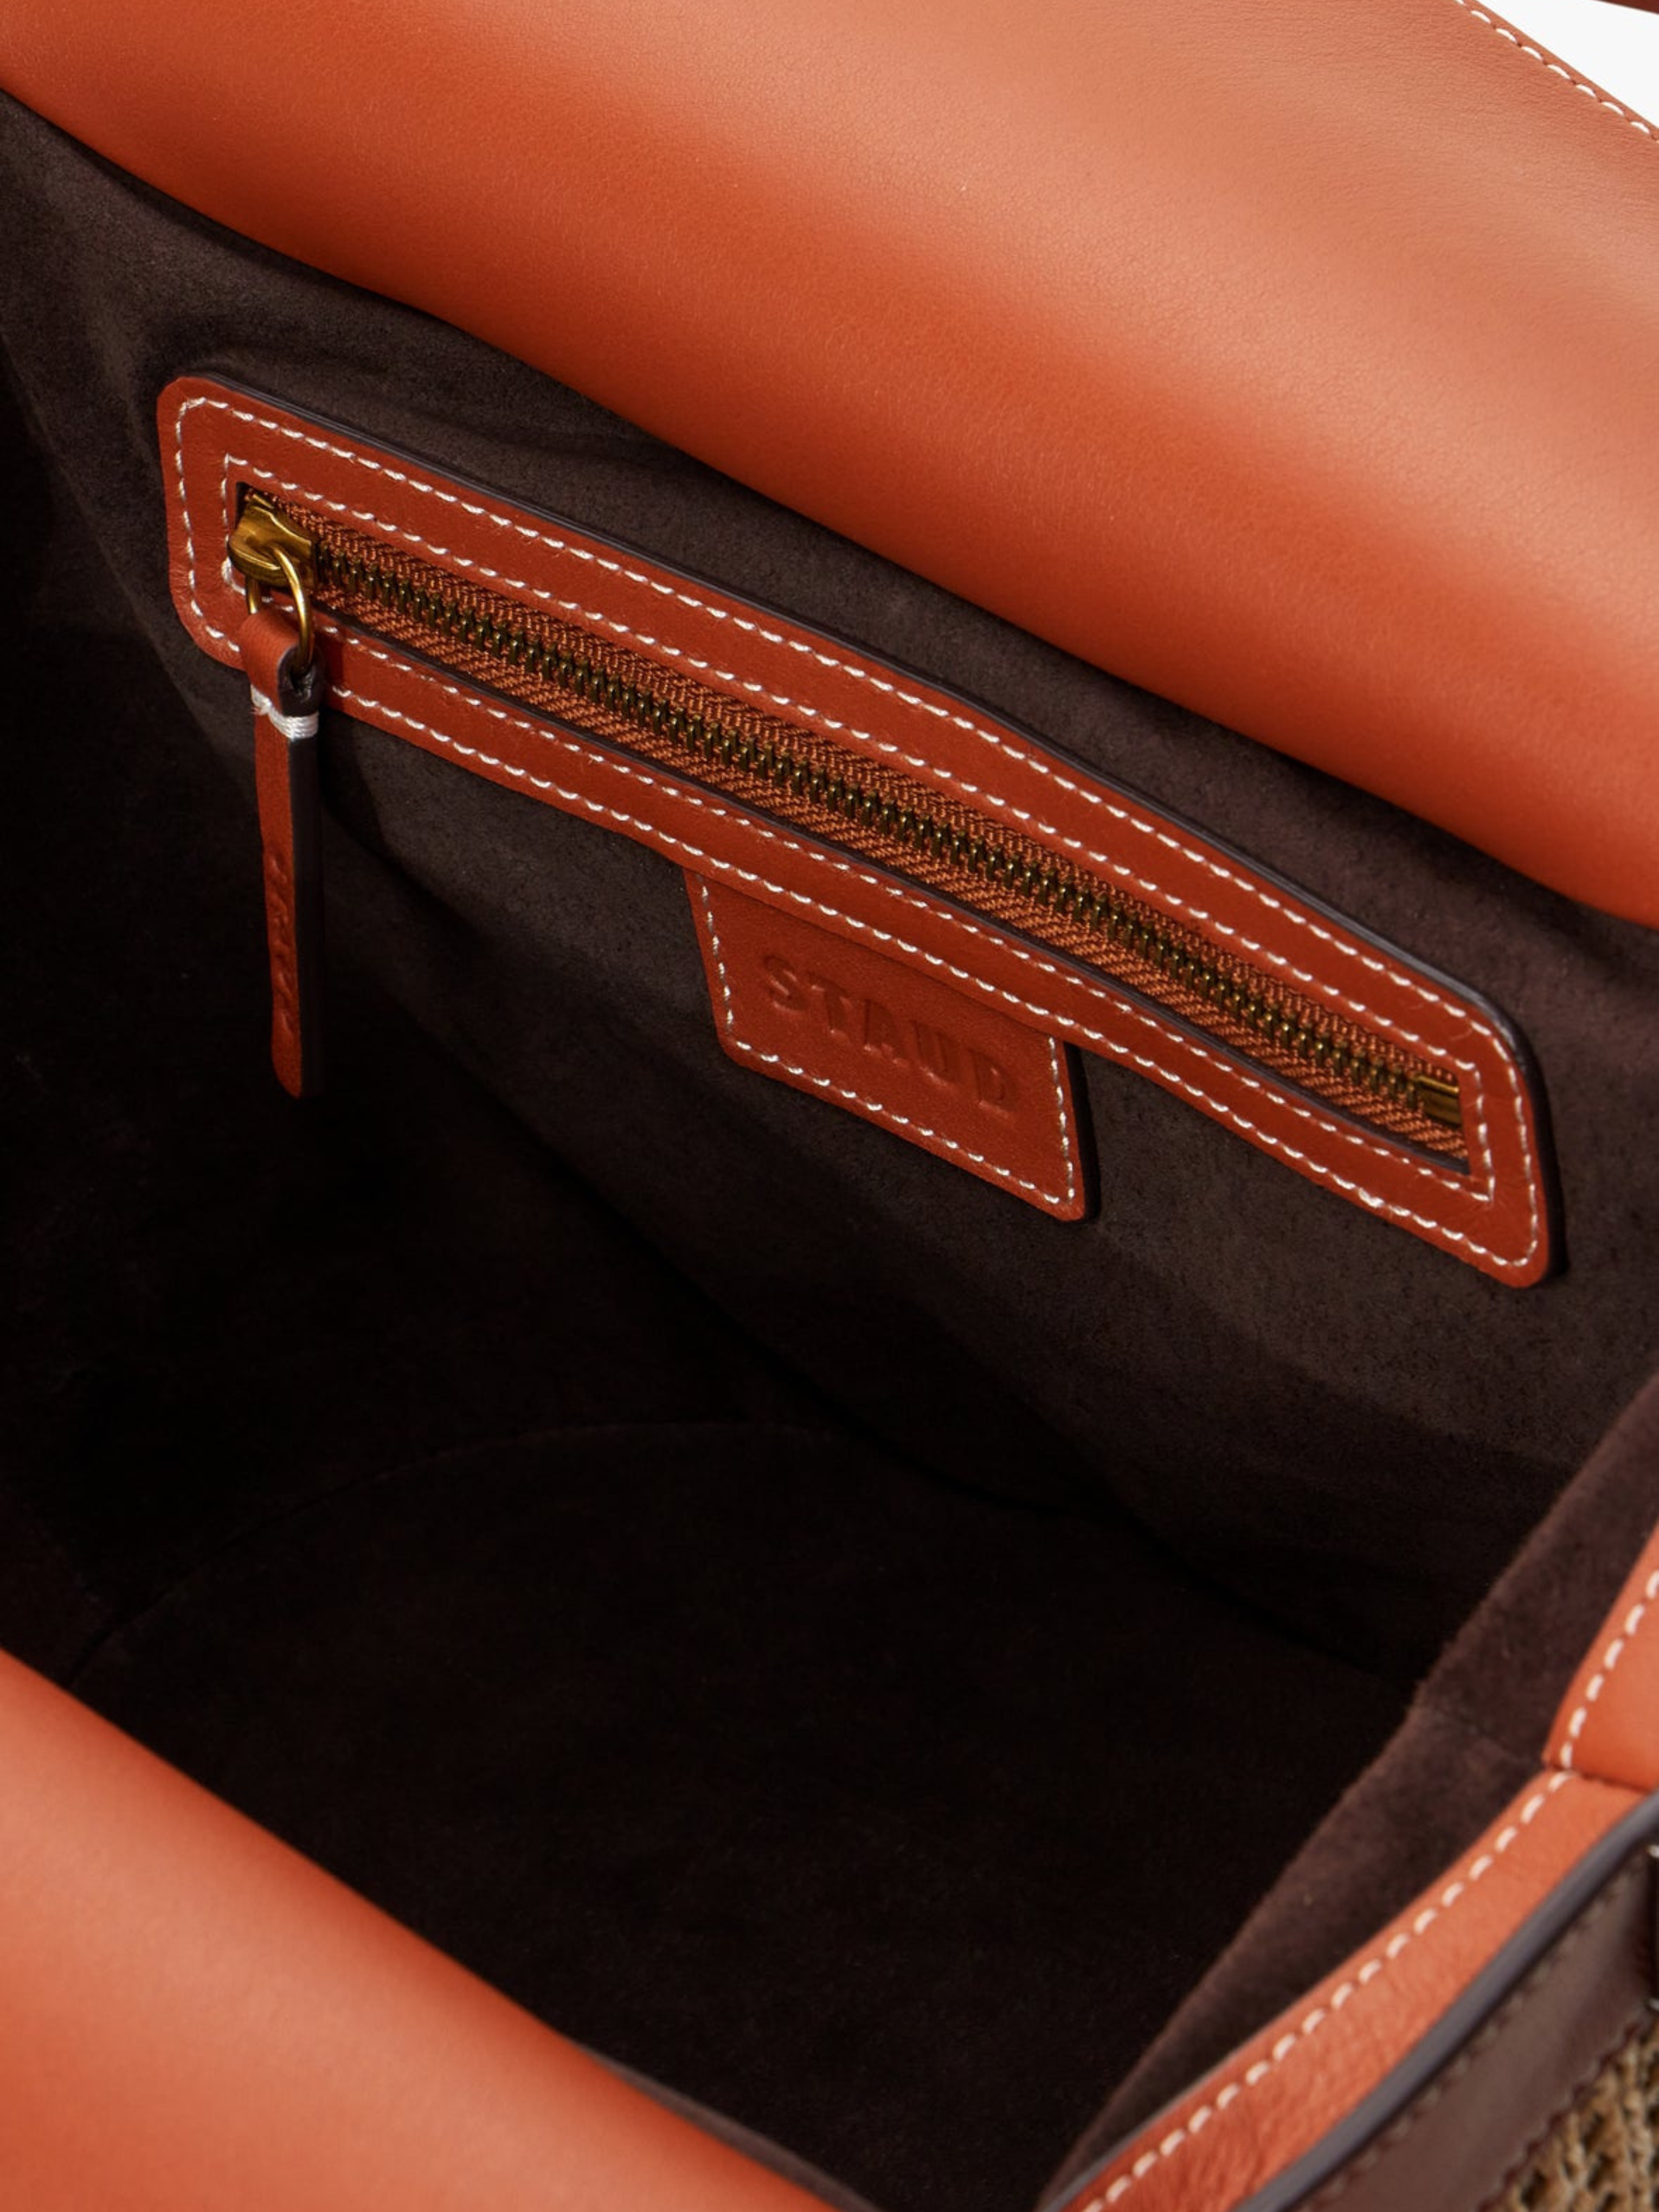 Loewe Orange And Beige Gate Leather And Raffia Mini Shoulder Bag